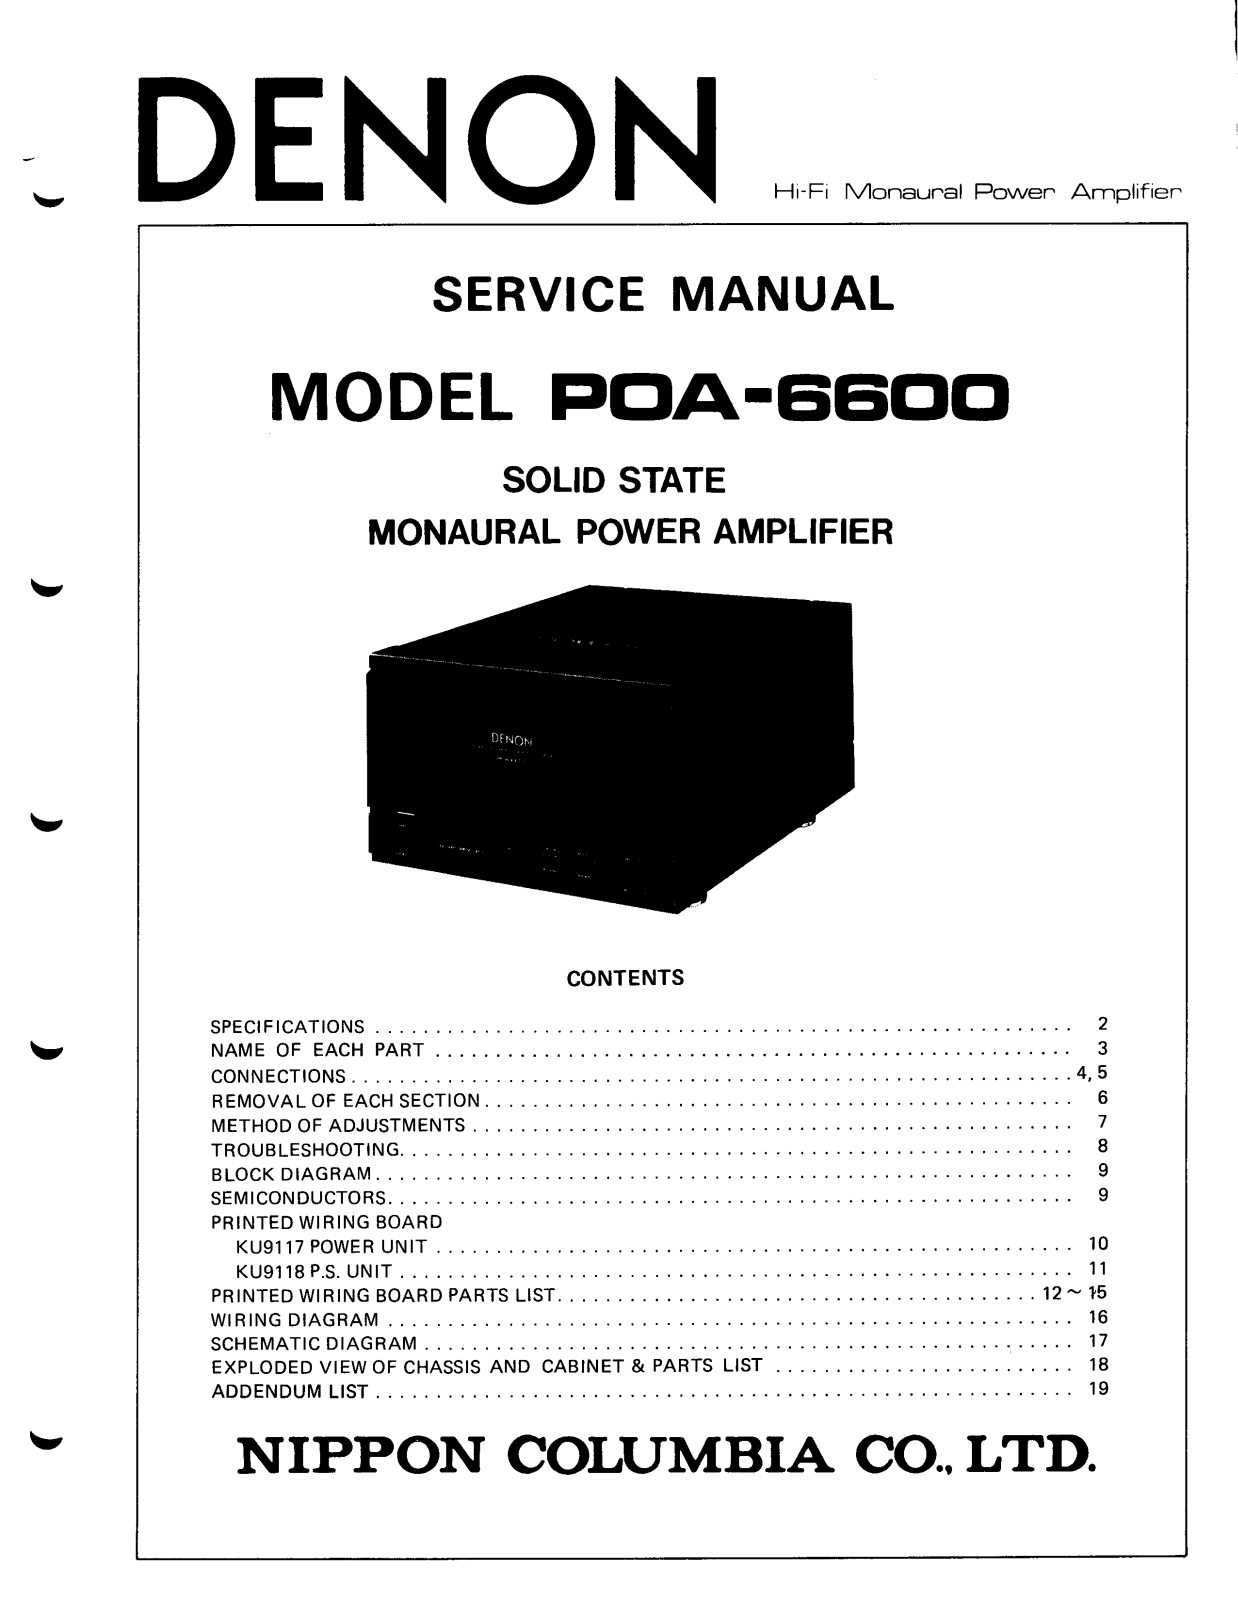 Denon POA-6600 Service Manual